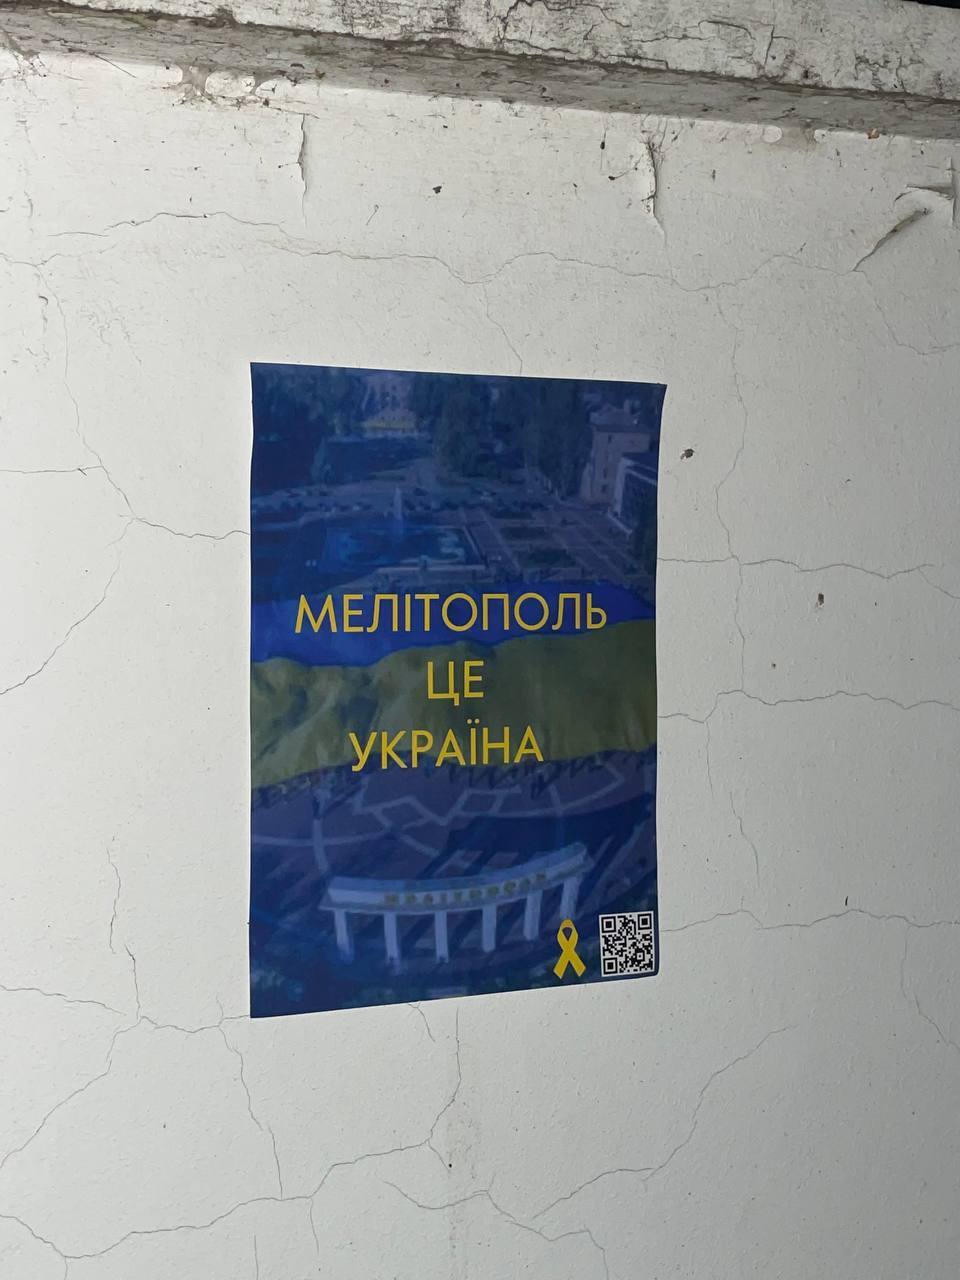 "Мелитополь – это Украина": в городе устроили новую патриотическую акцию и отправили на свалку триколоры. Фото